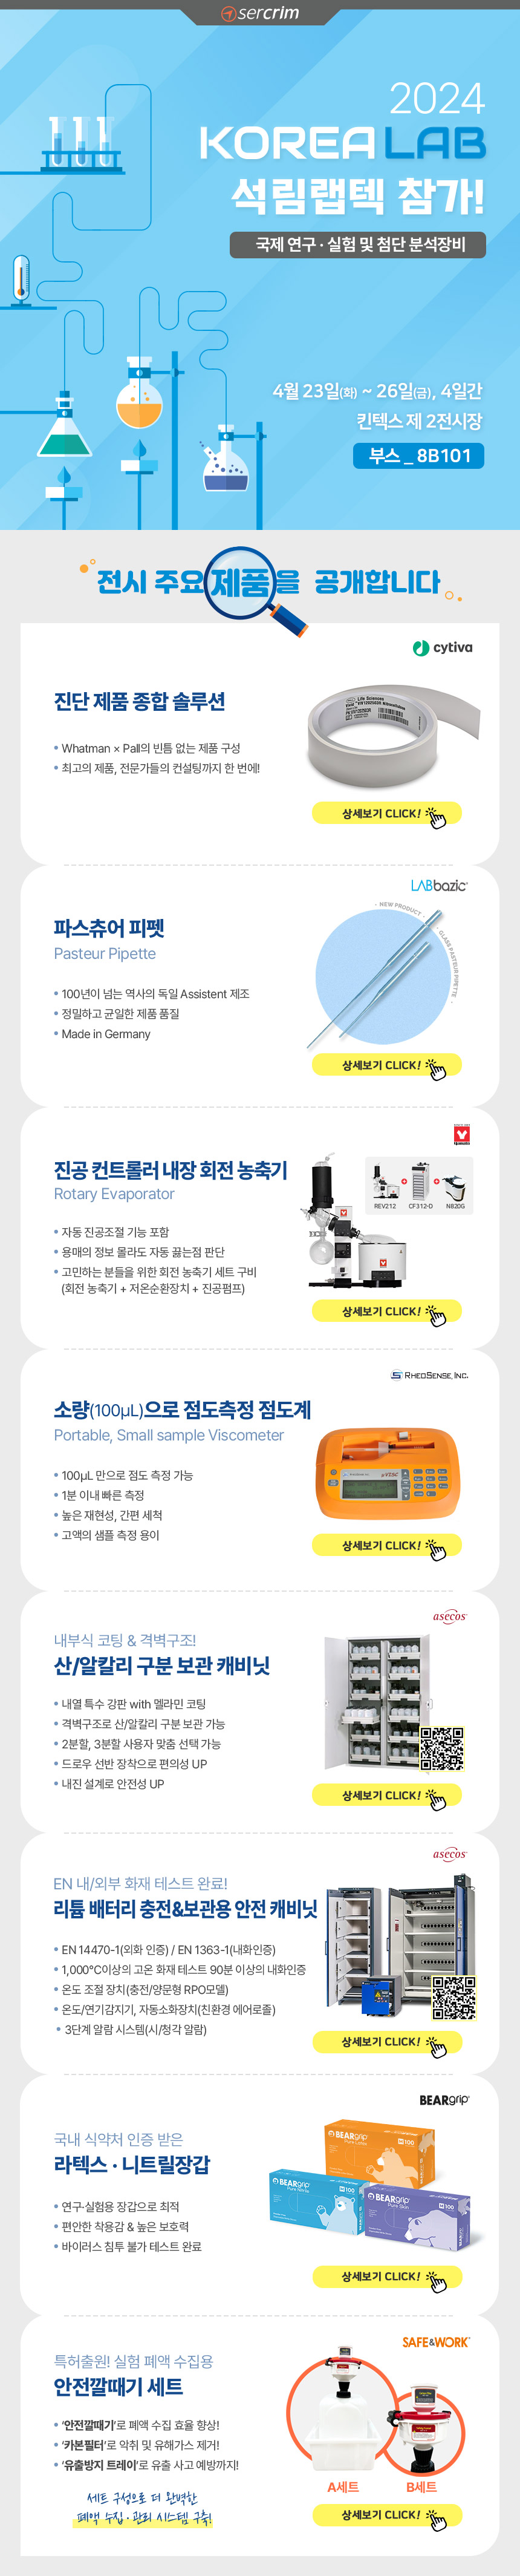 240423_2024korea-lab_newsletter_132920.jpg